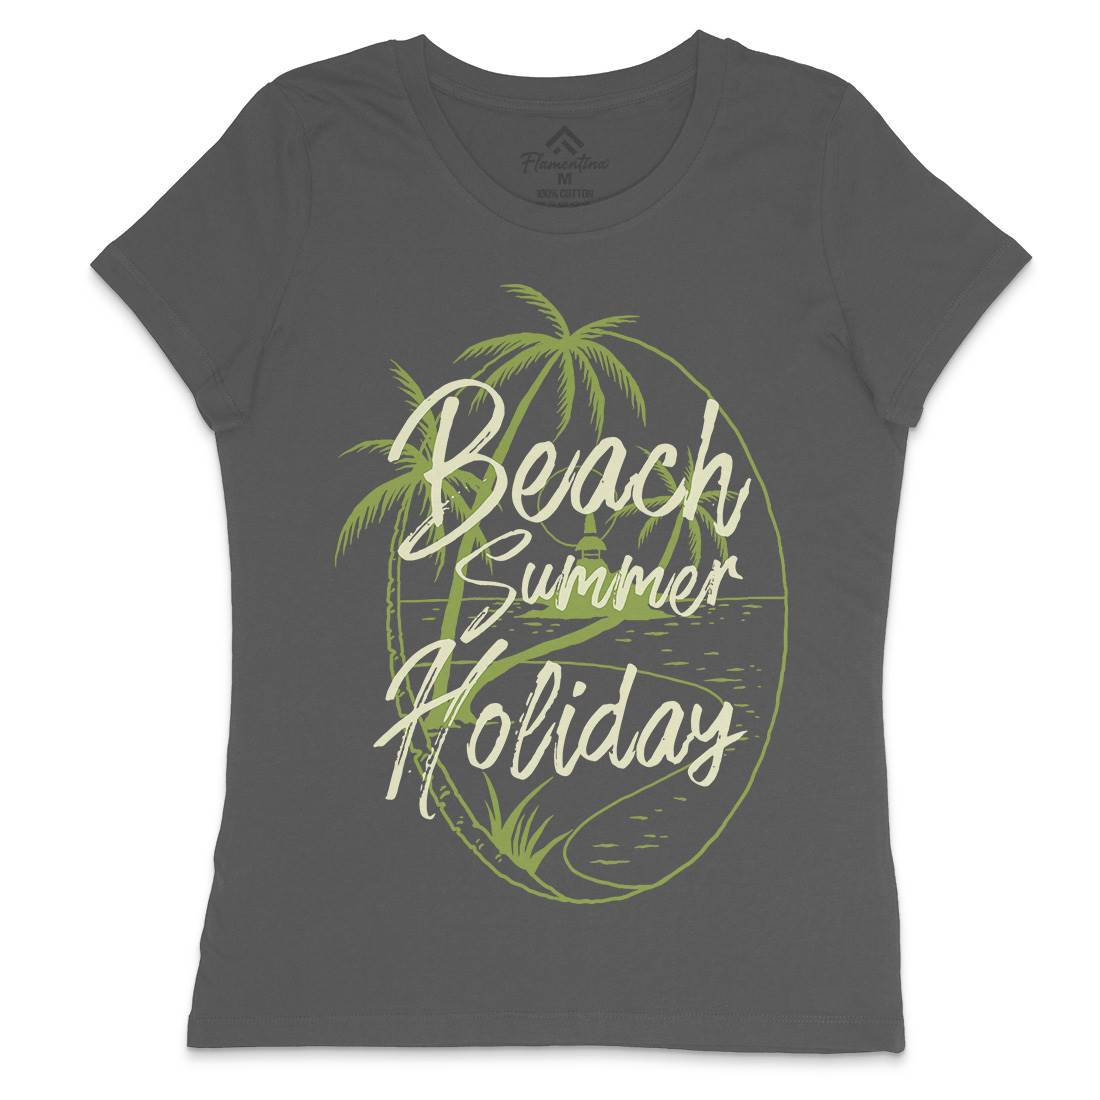 Beach Island Womens Crew Neck T-Shirt Nature C709